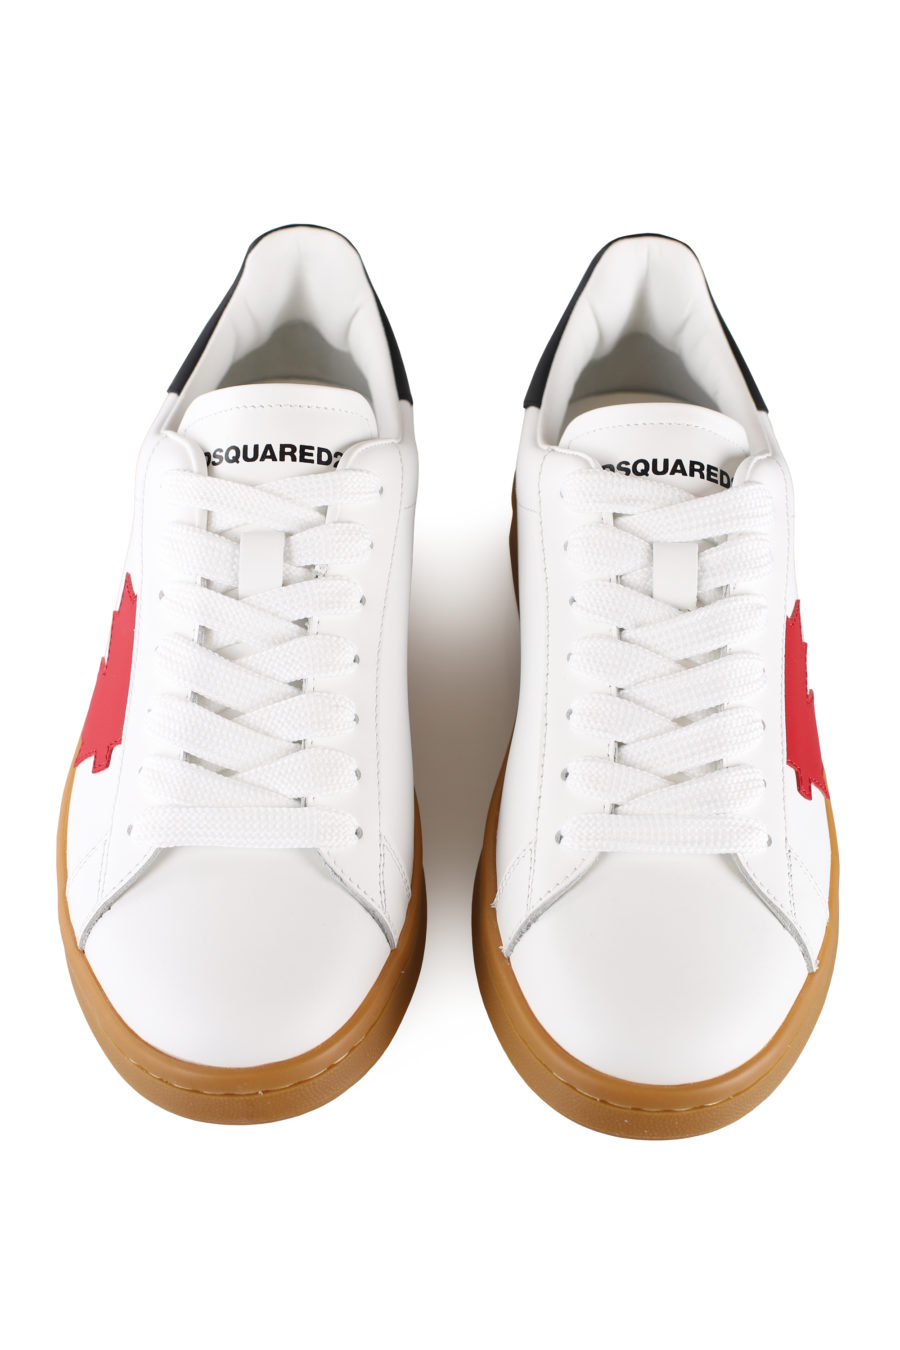 Zapatillas blancas con hoja roja y suela marrón - IMG 0049